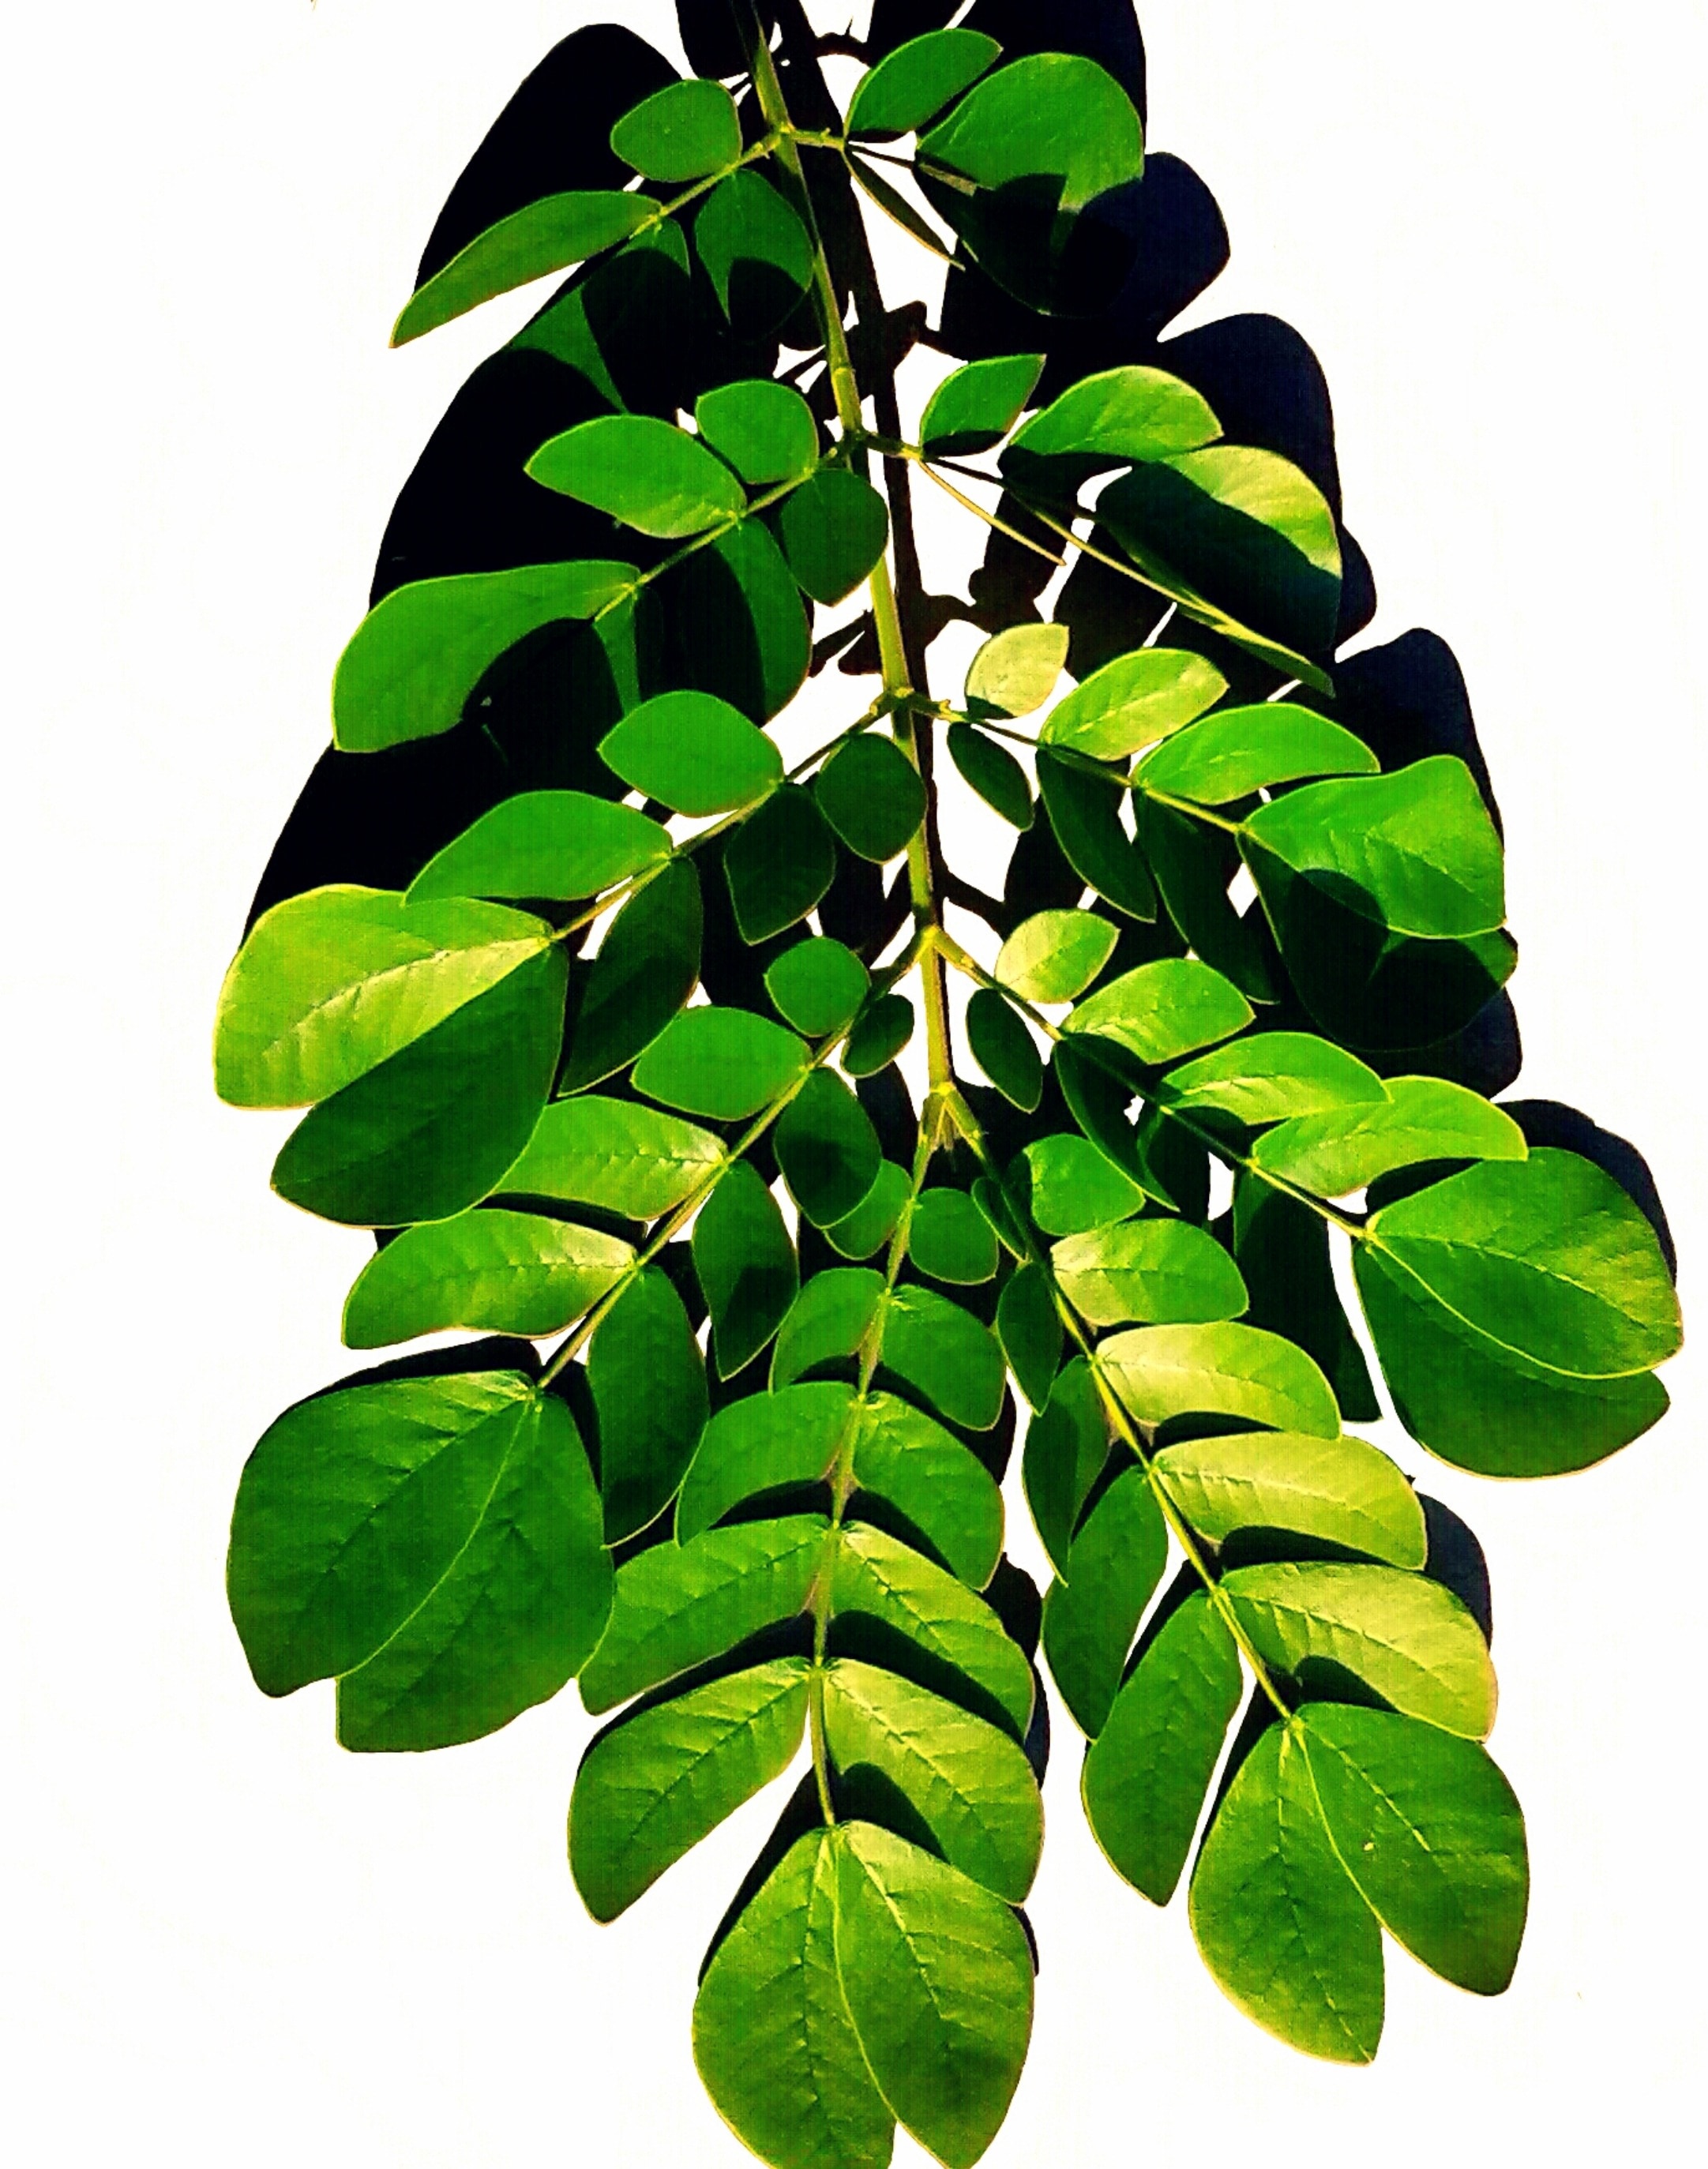 Botanical, Leaf, Natural, Plant, Nature, leaf, green color